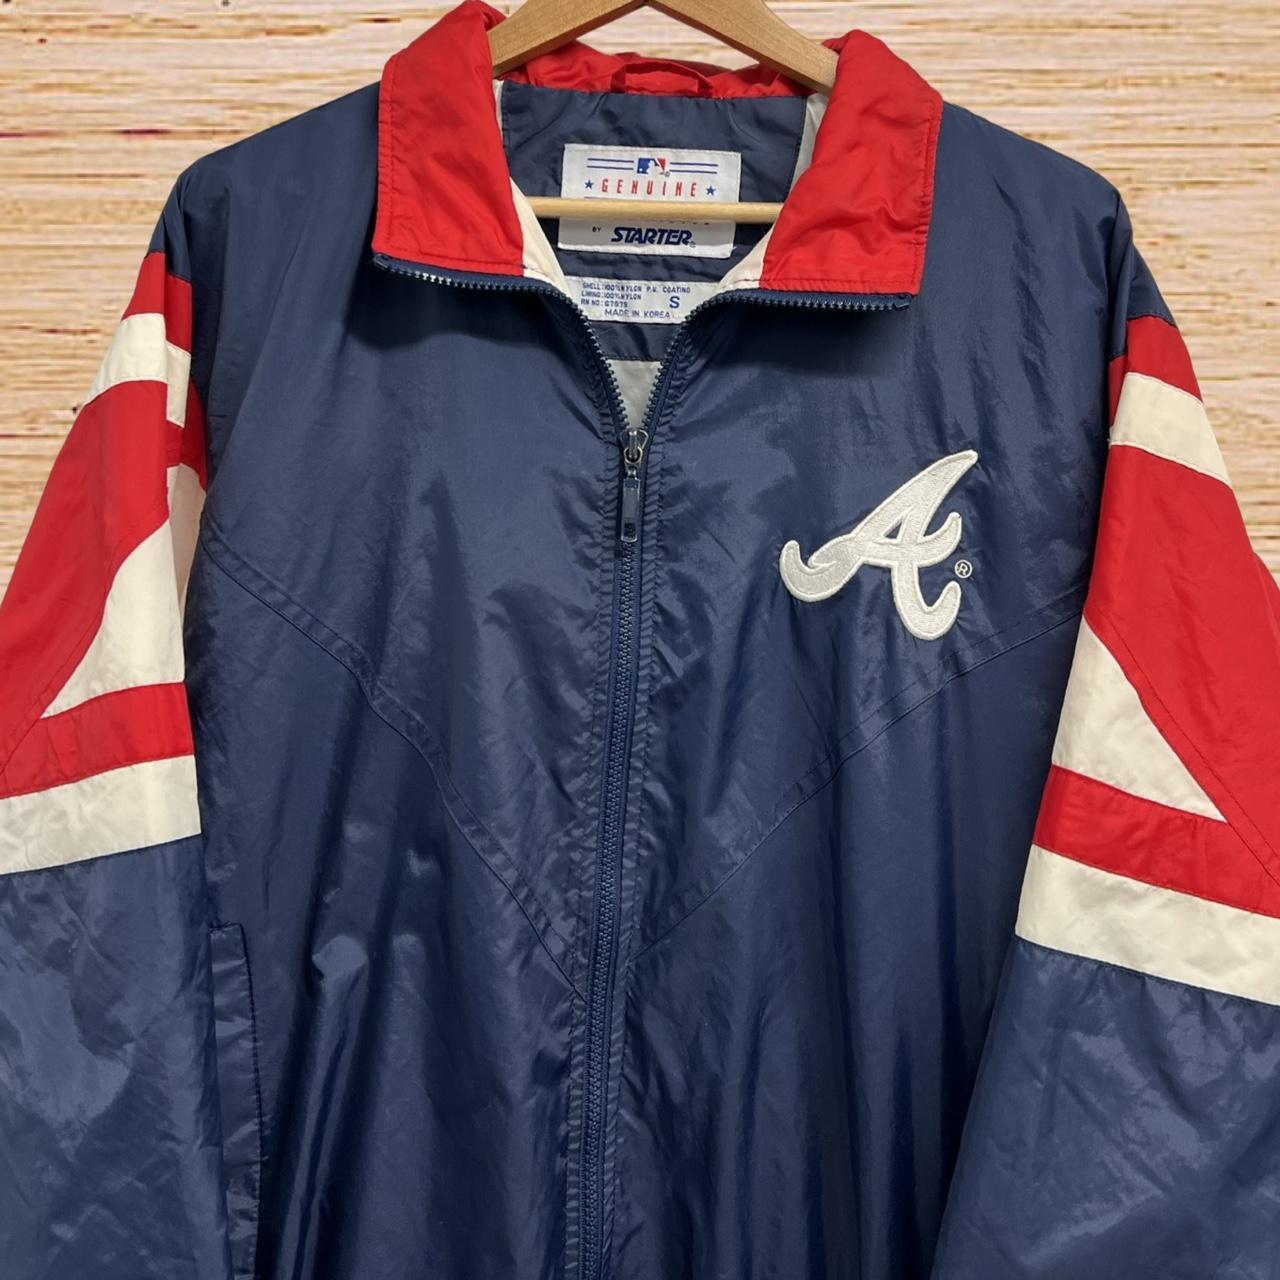 Vintage Columbia sportswear Atlanta Braves - Depop